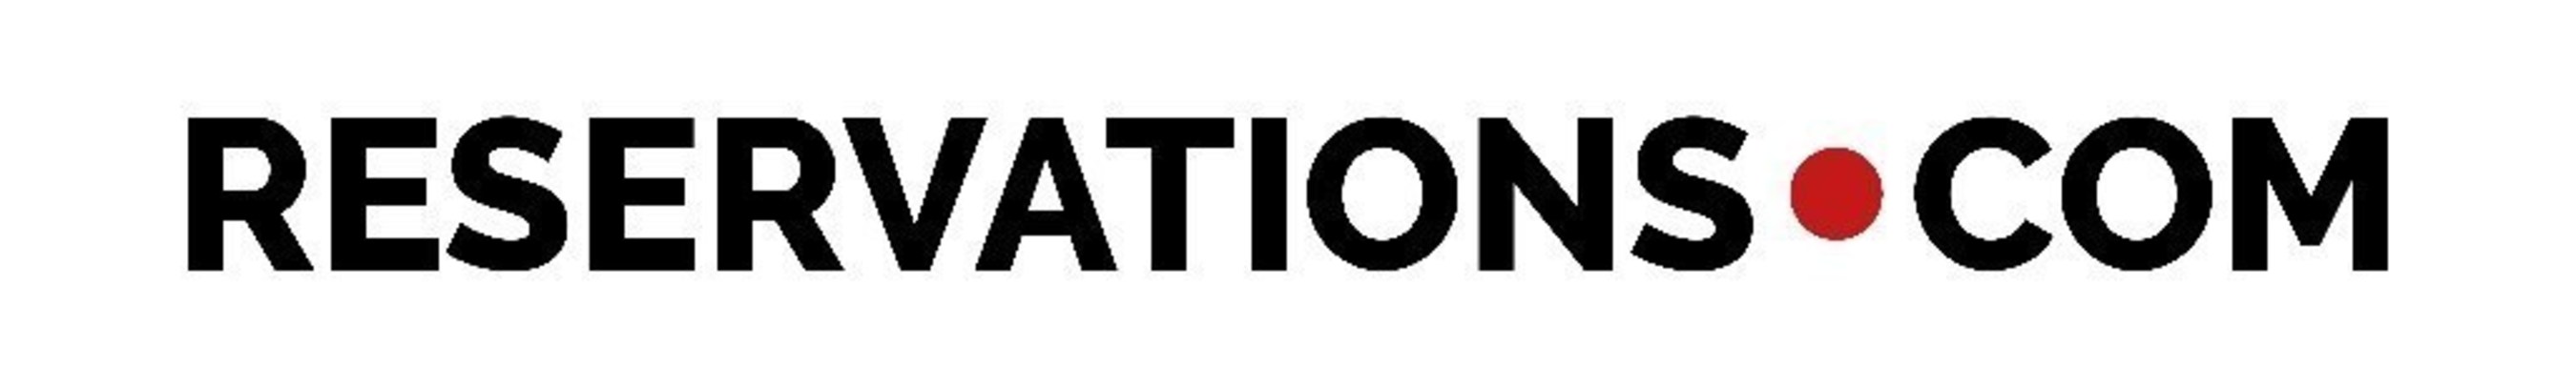 Reservations.com logo (PRNewsFoto/Reservations.com)